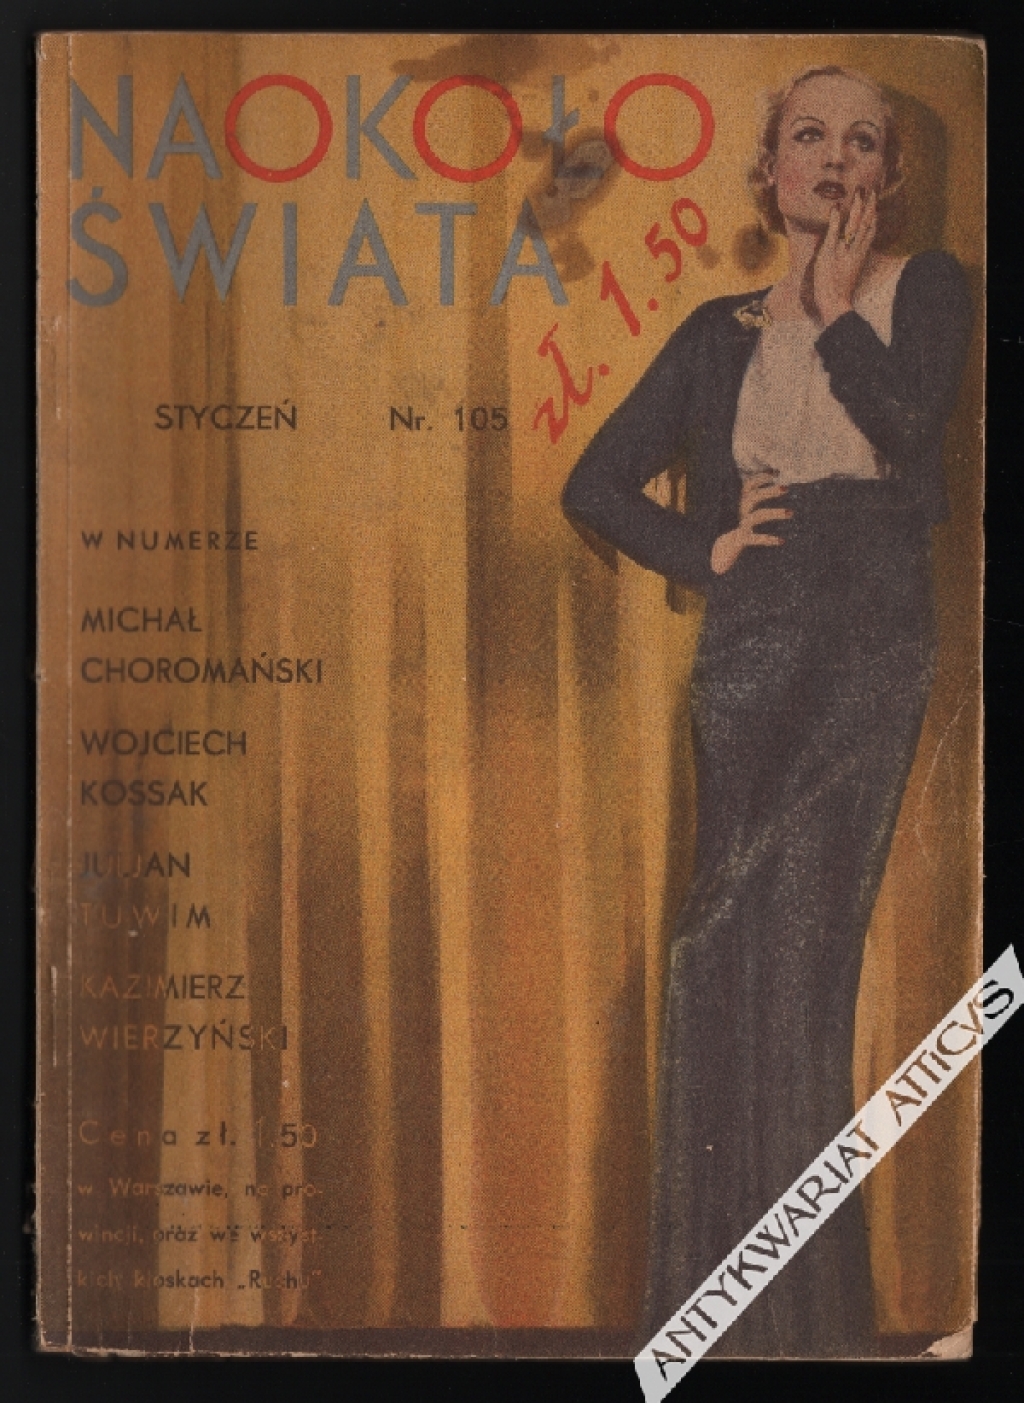 [czasopismo] Naokoło świata, nr 105, styczeń 1933 r.